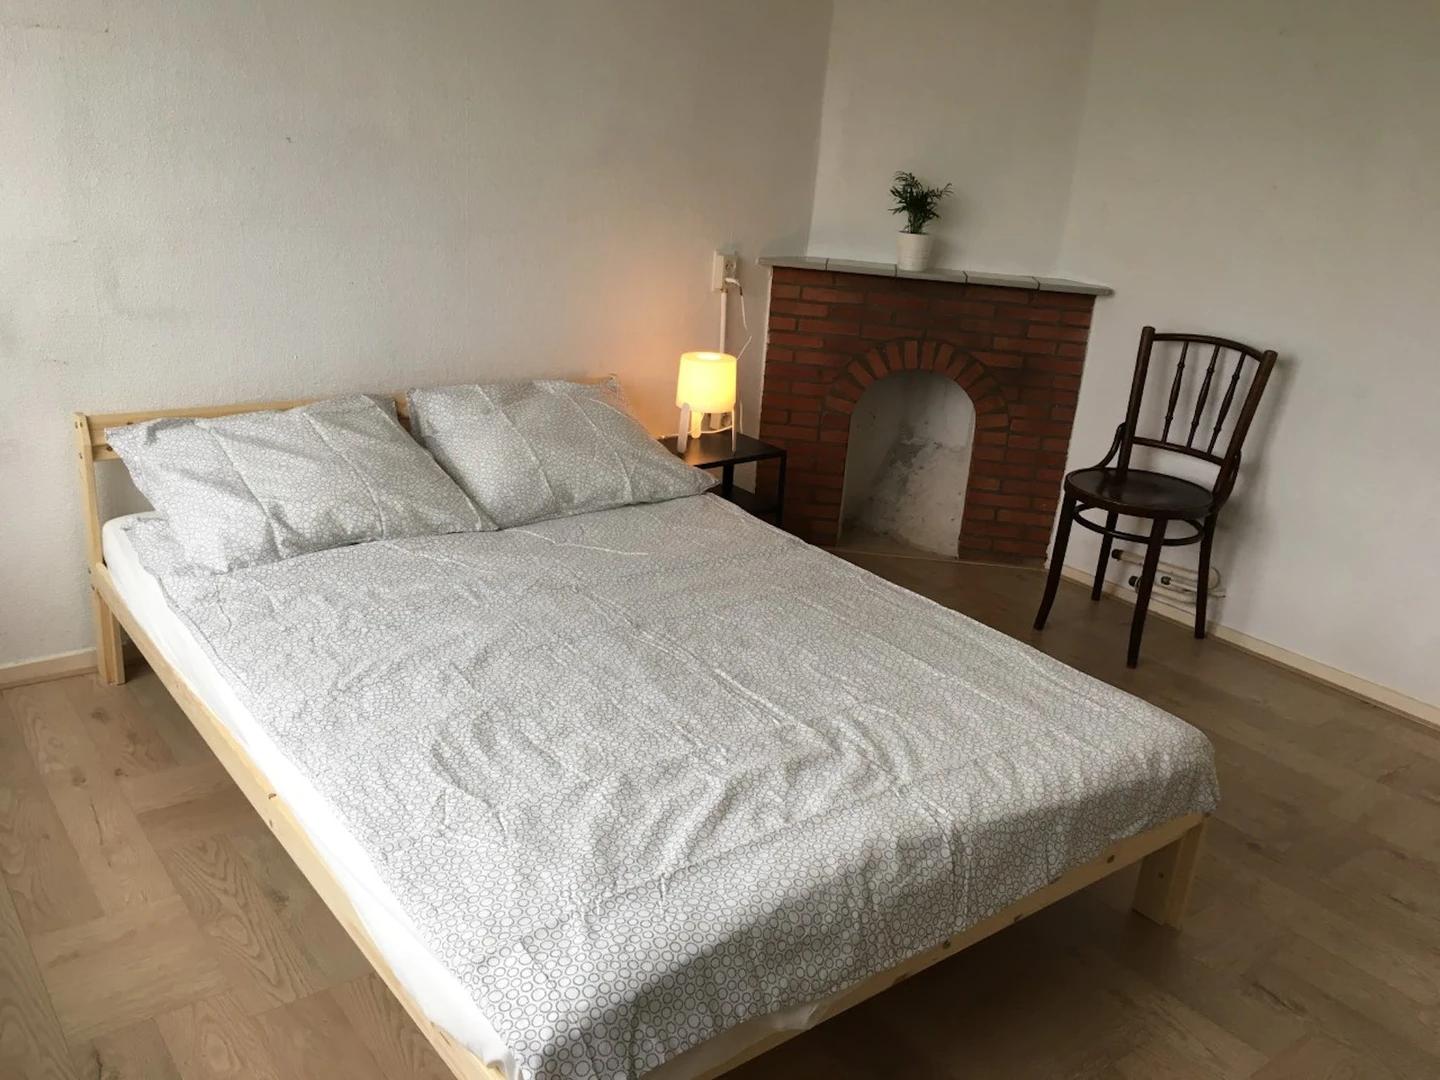 Cheap private room in leeuwarden